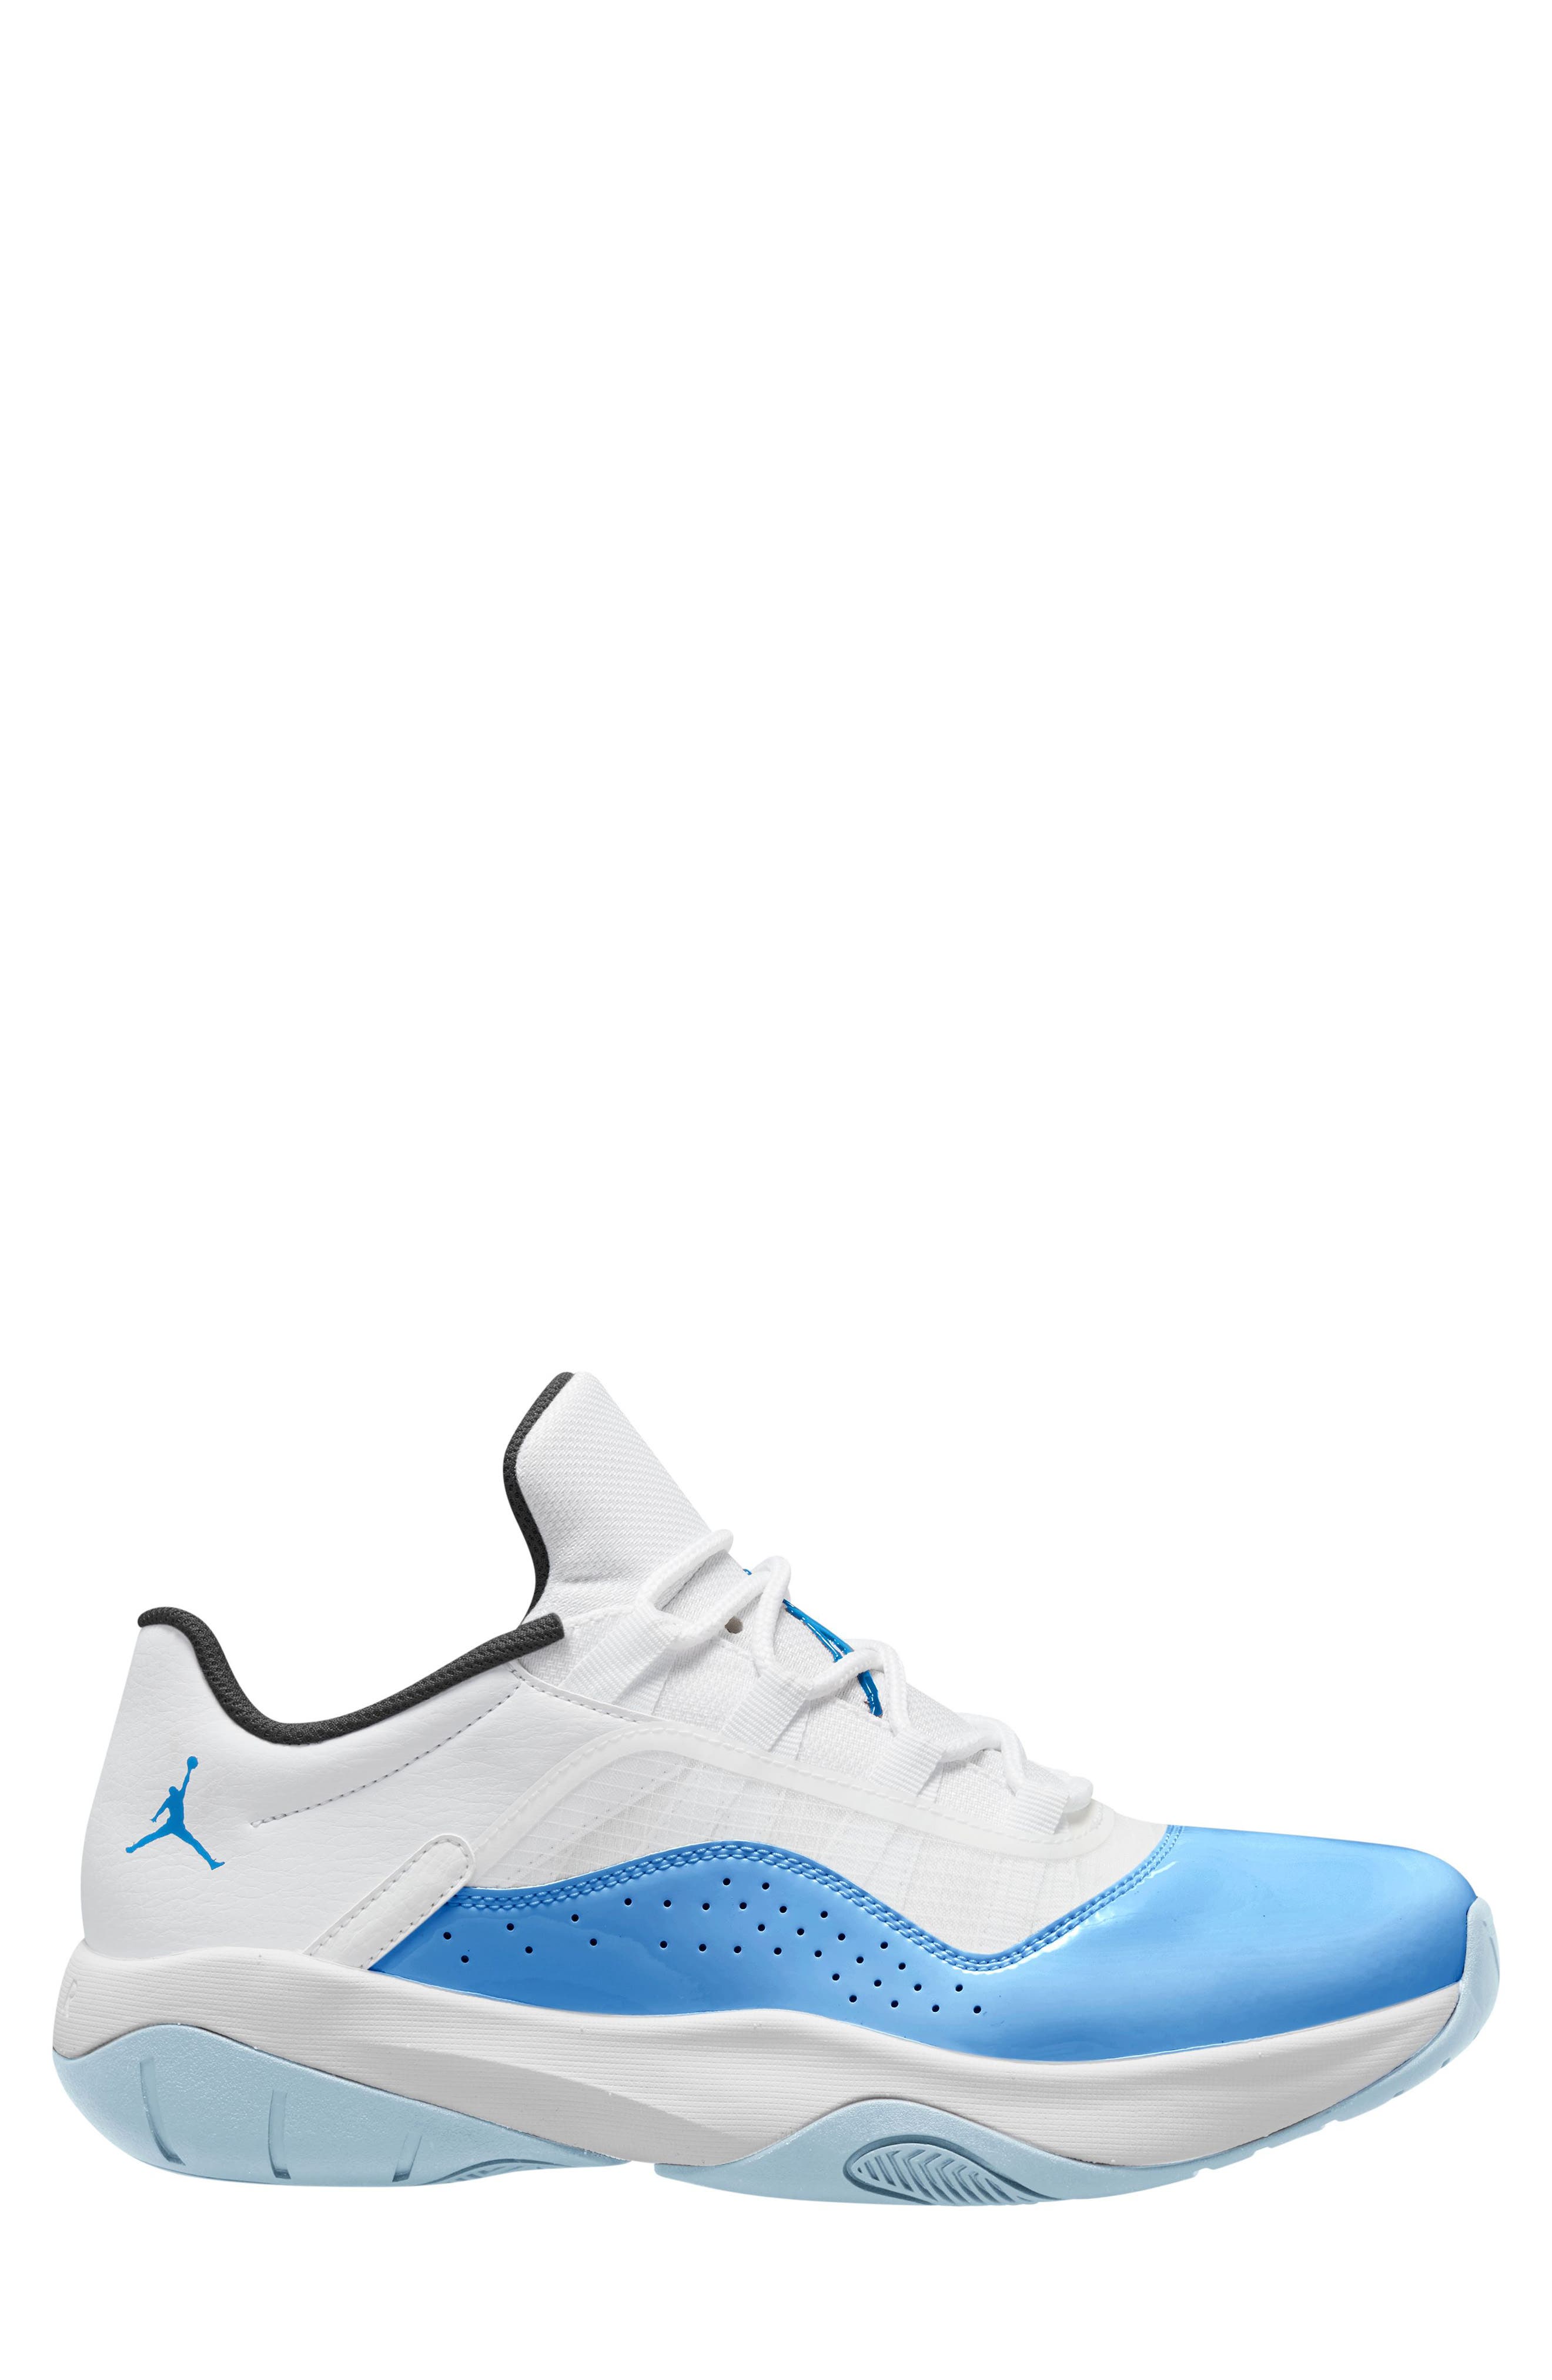 air jordan white tennis shoes